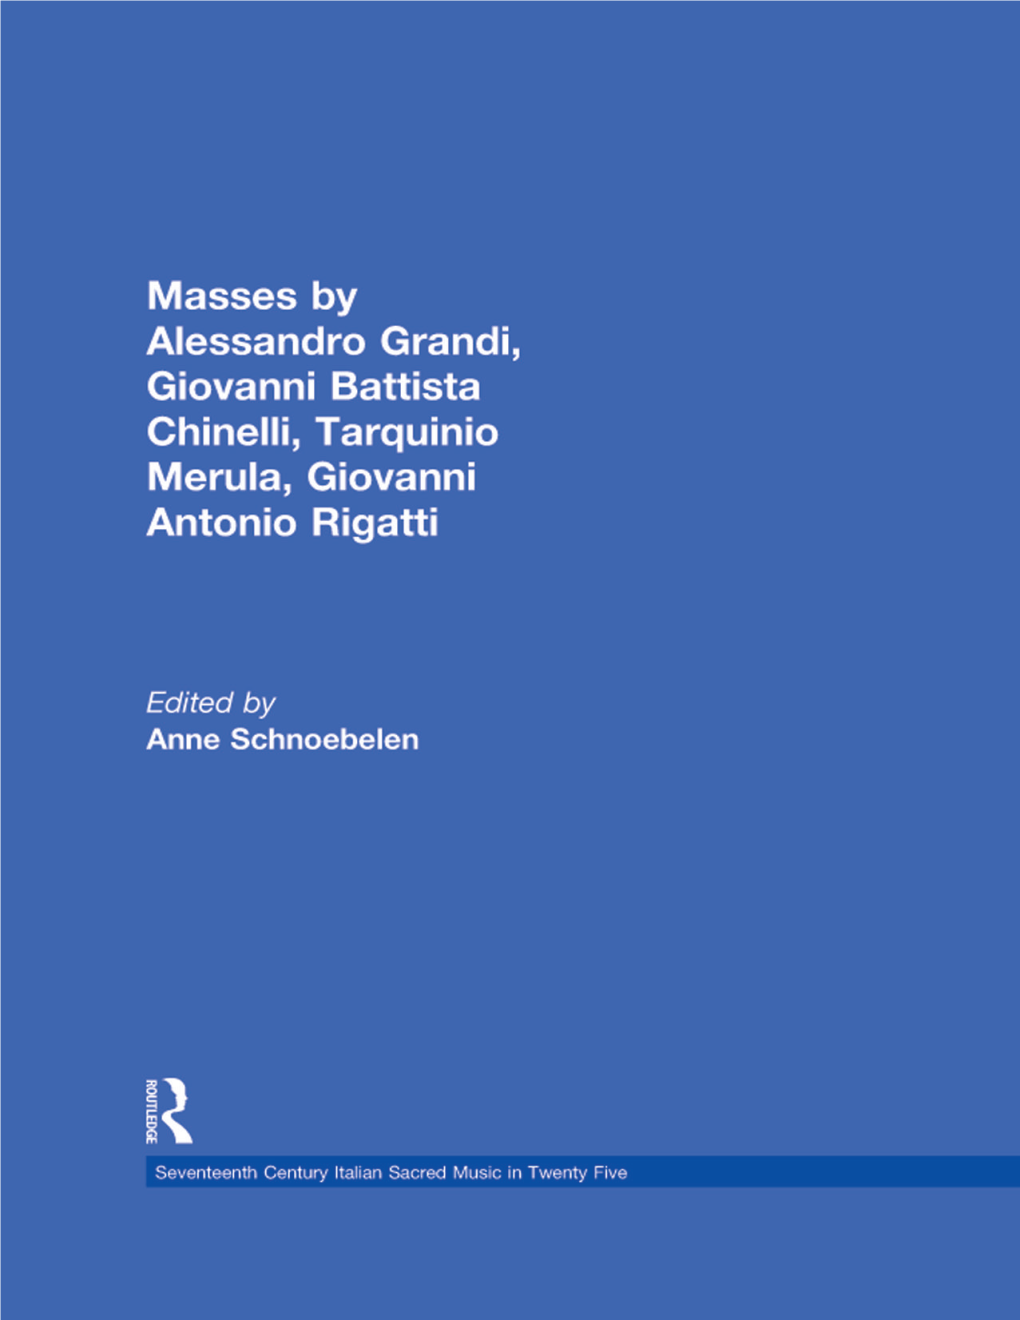 Masses by Alessandro Grandi, Giovanni Battista Chinelli, Giovanni